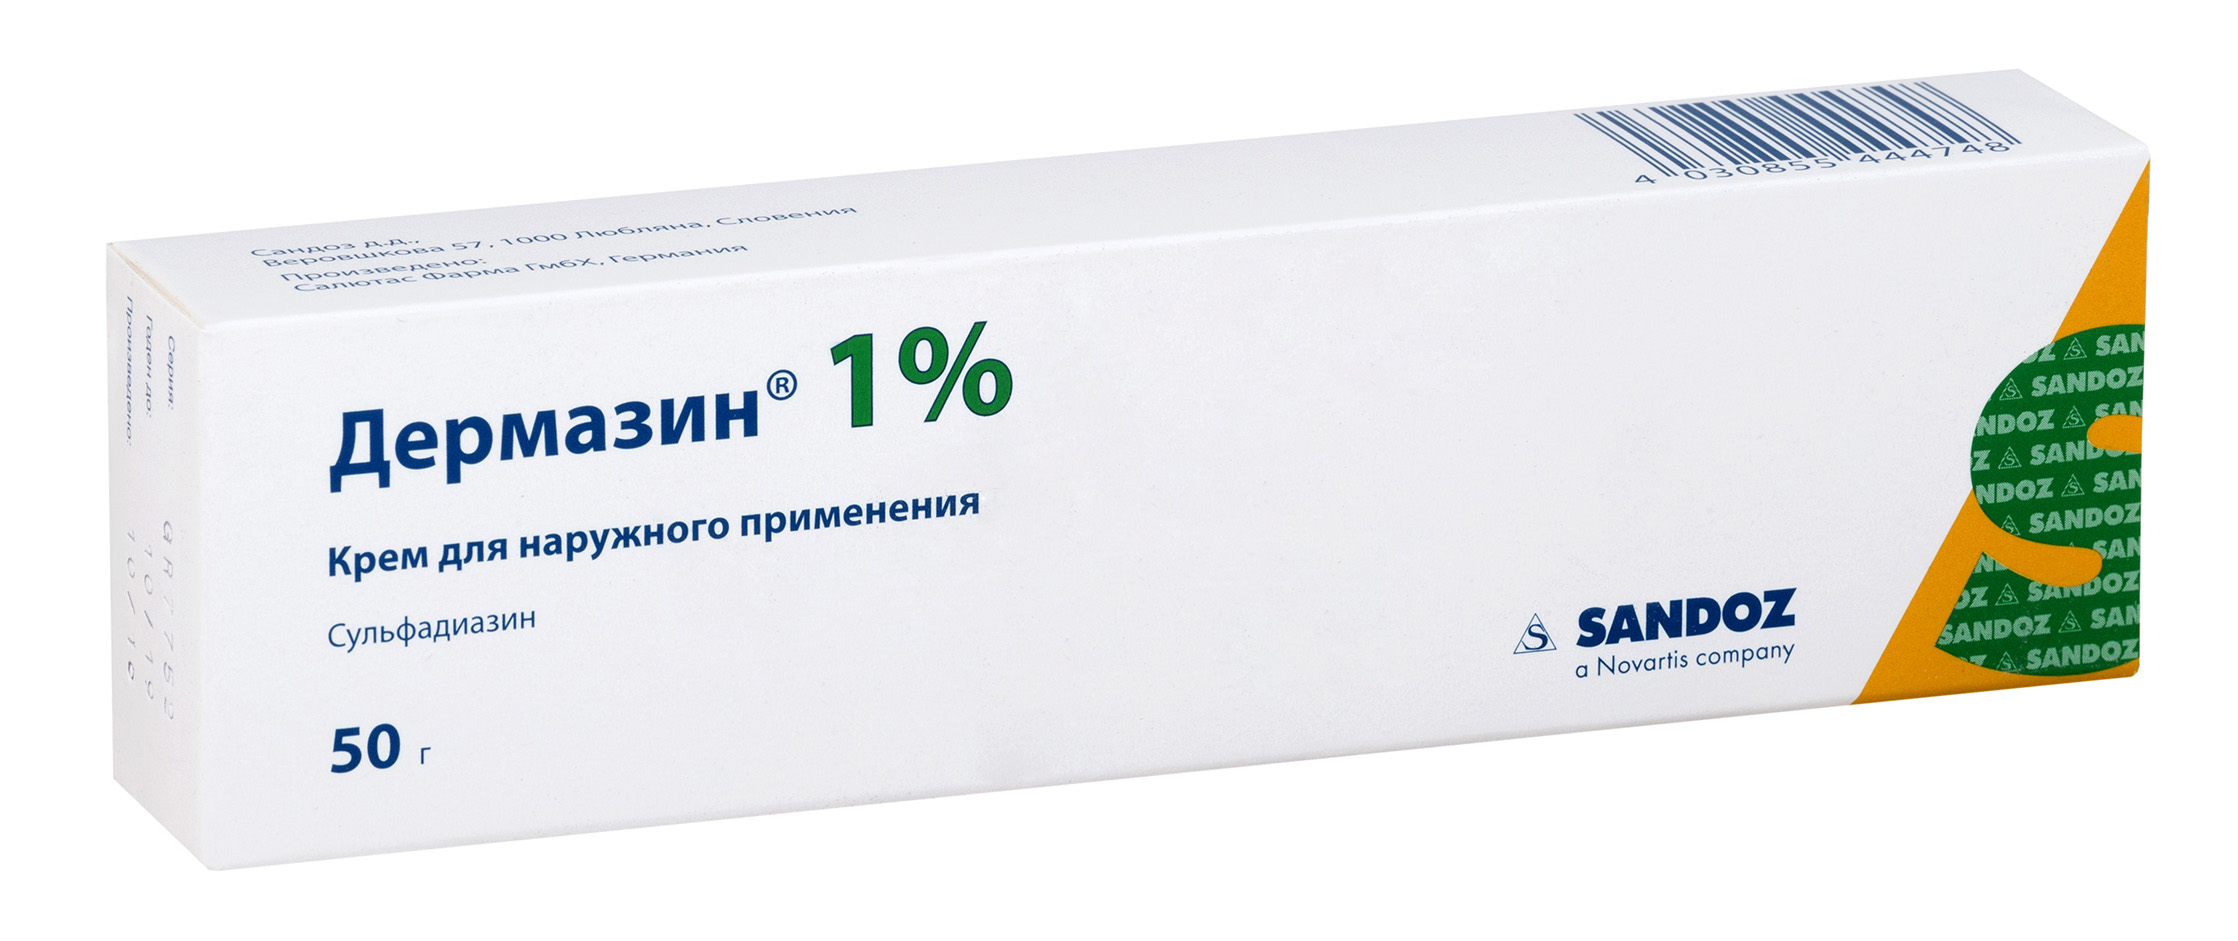 Aptekirls :: Дермазин крем 1% 50г — заказать онлайн и  в .